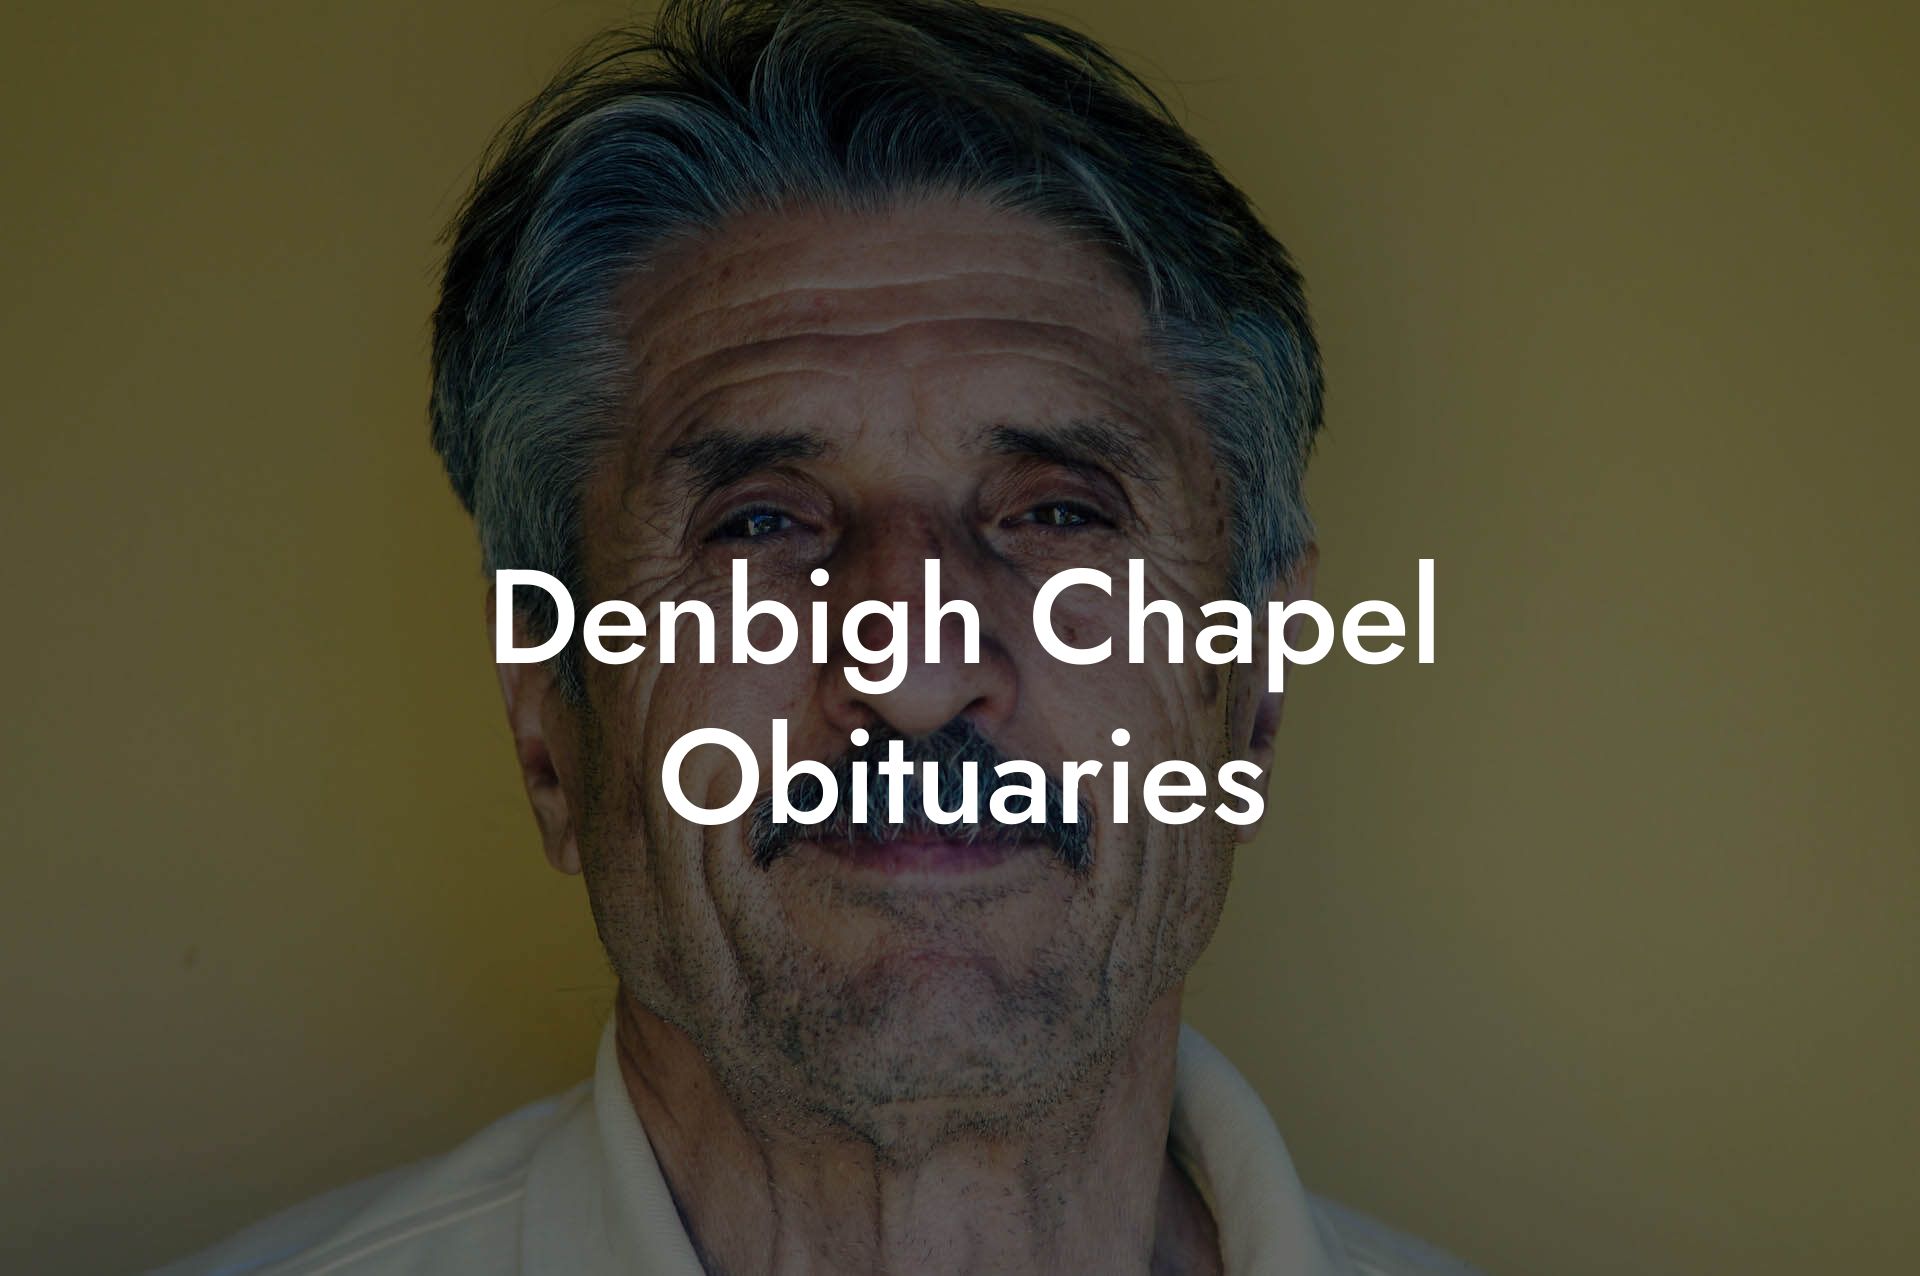 Denbigh Chapel Obituaries